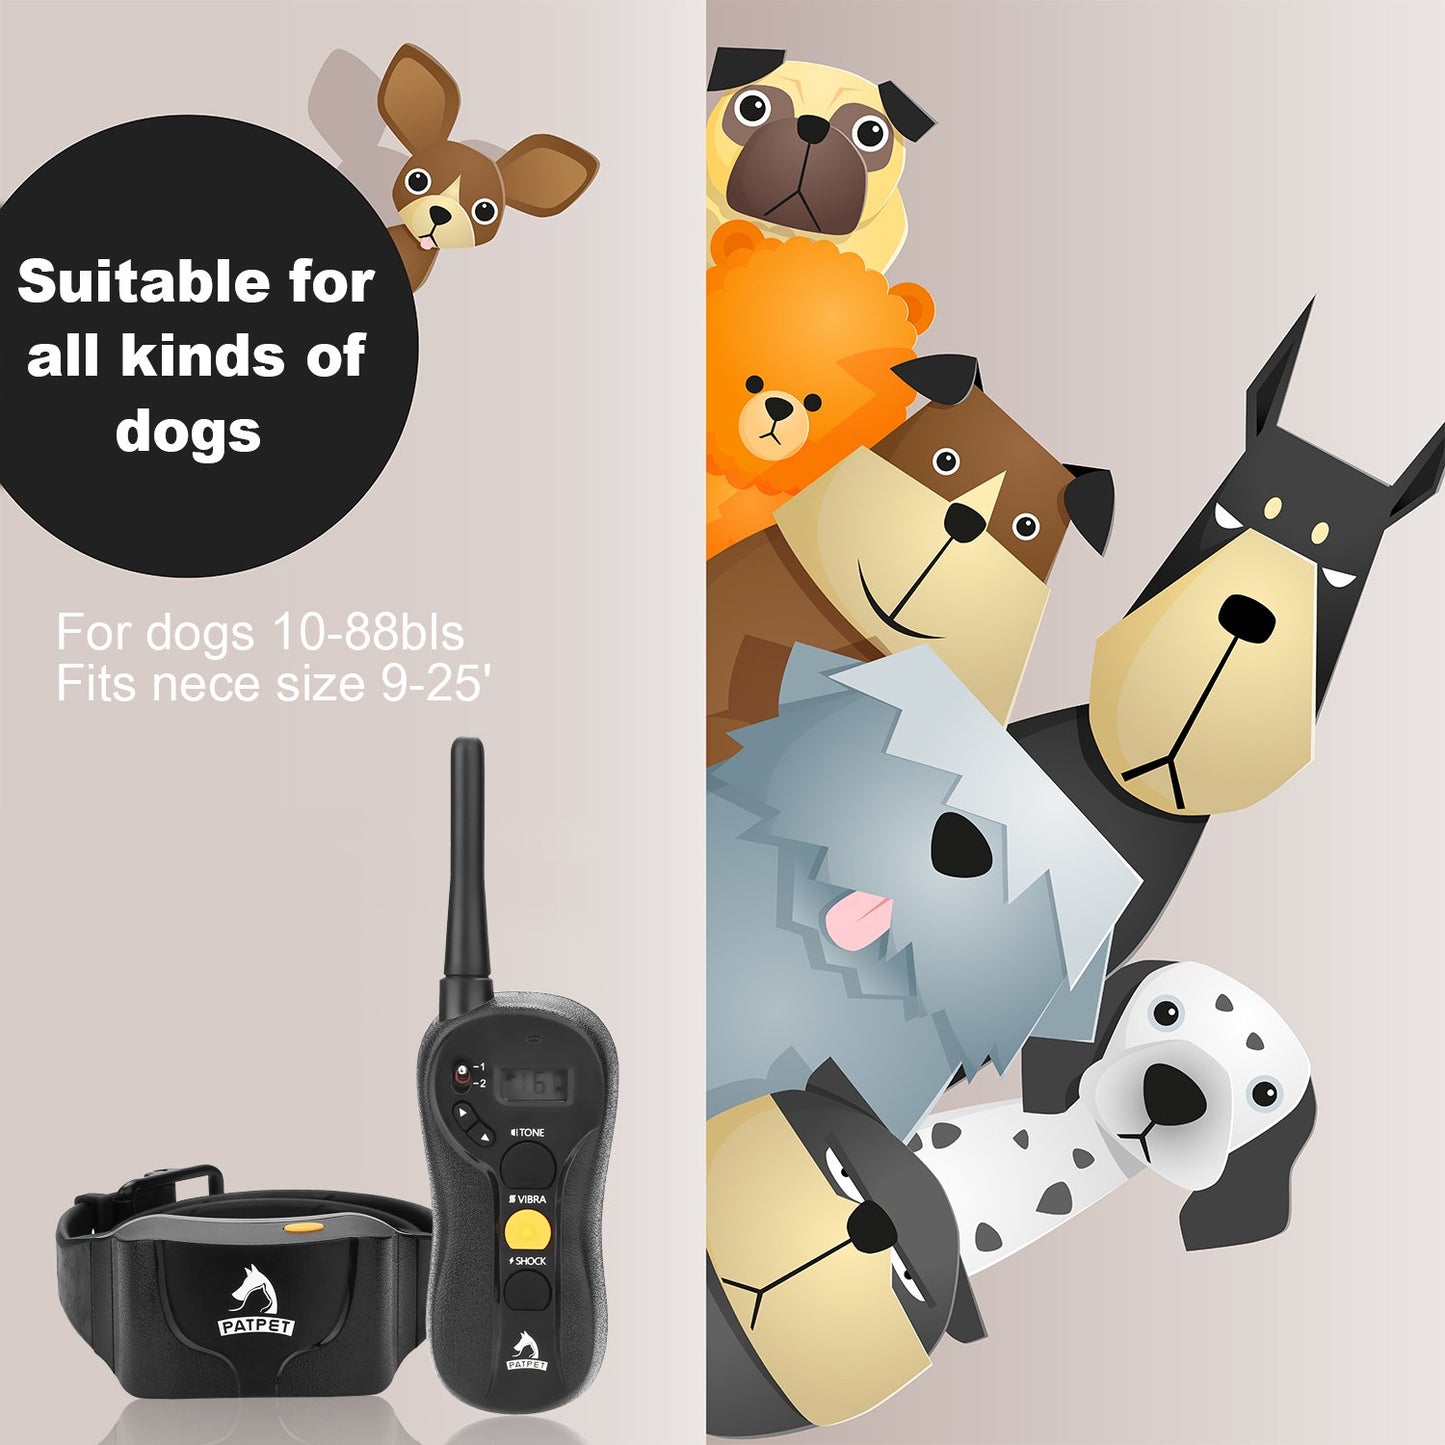 Collier de dressage pour chien, PATPET étanche - IPX7 et collier de choc à distance rechargeable pour chiens avec guide de dressage, vibration/choc/bip pour chien de toutes tailles, fonctionnement à l'aveugle, portée jusqu'à 656 m (p-collar620)